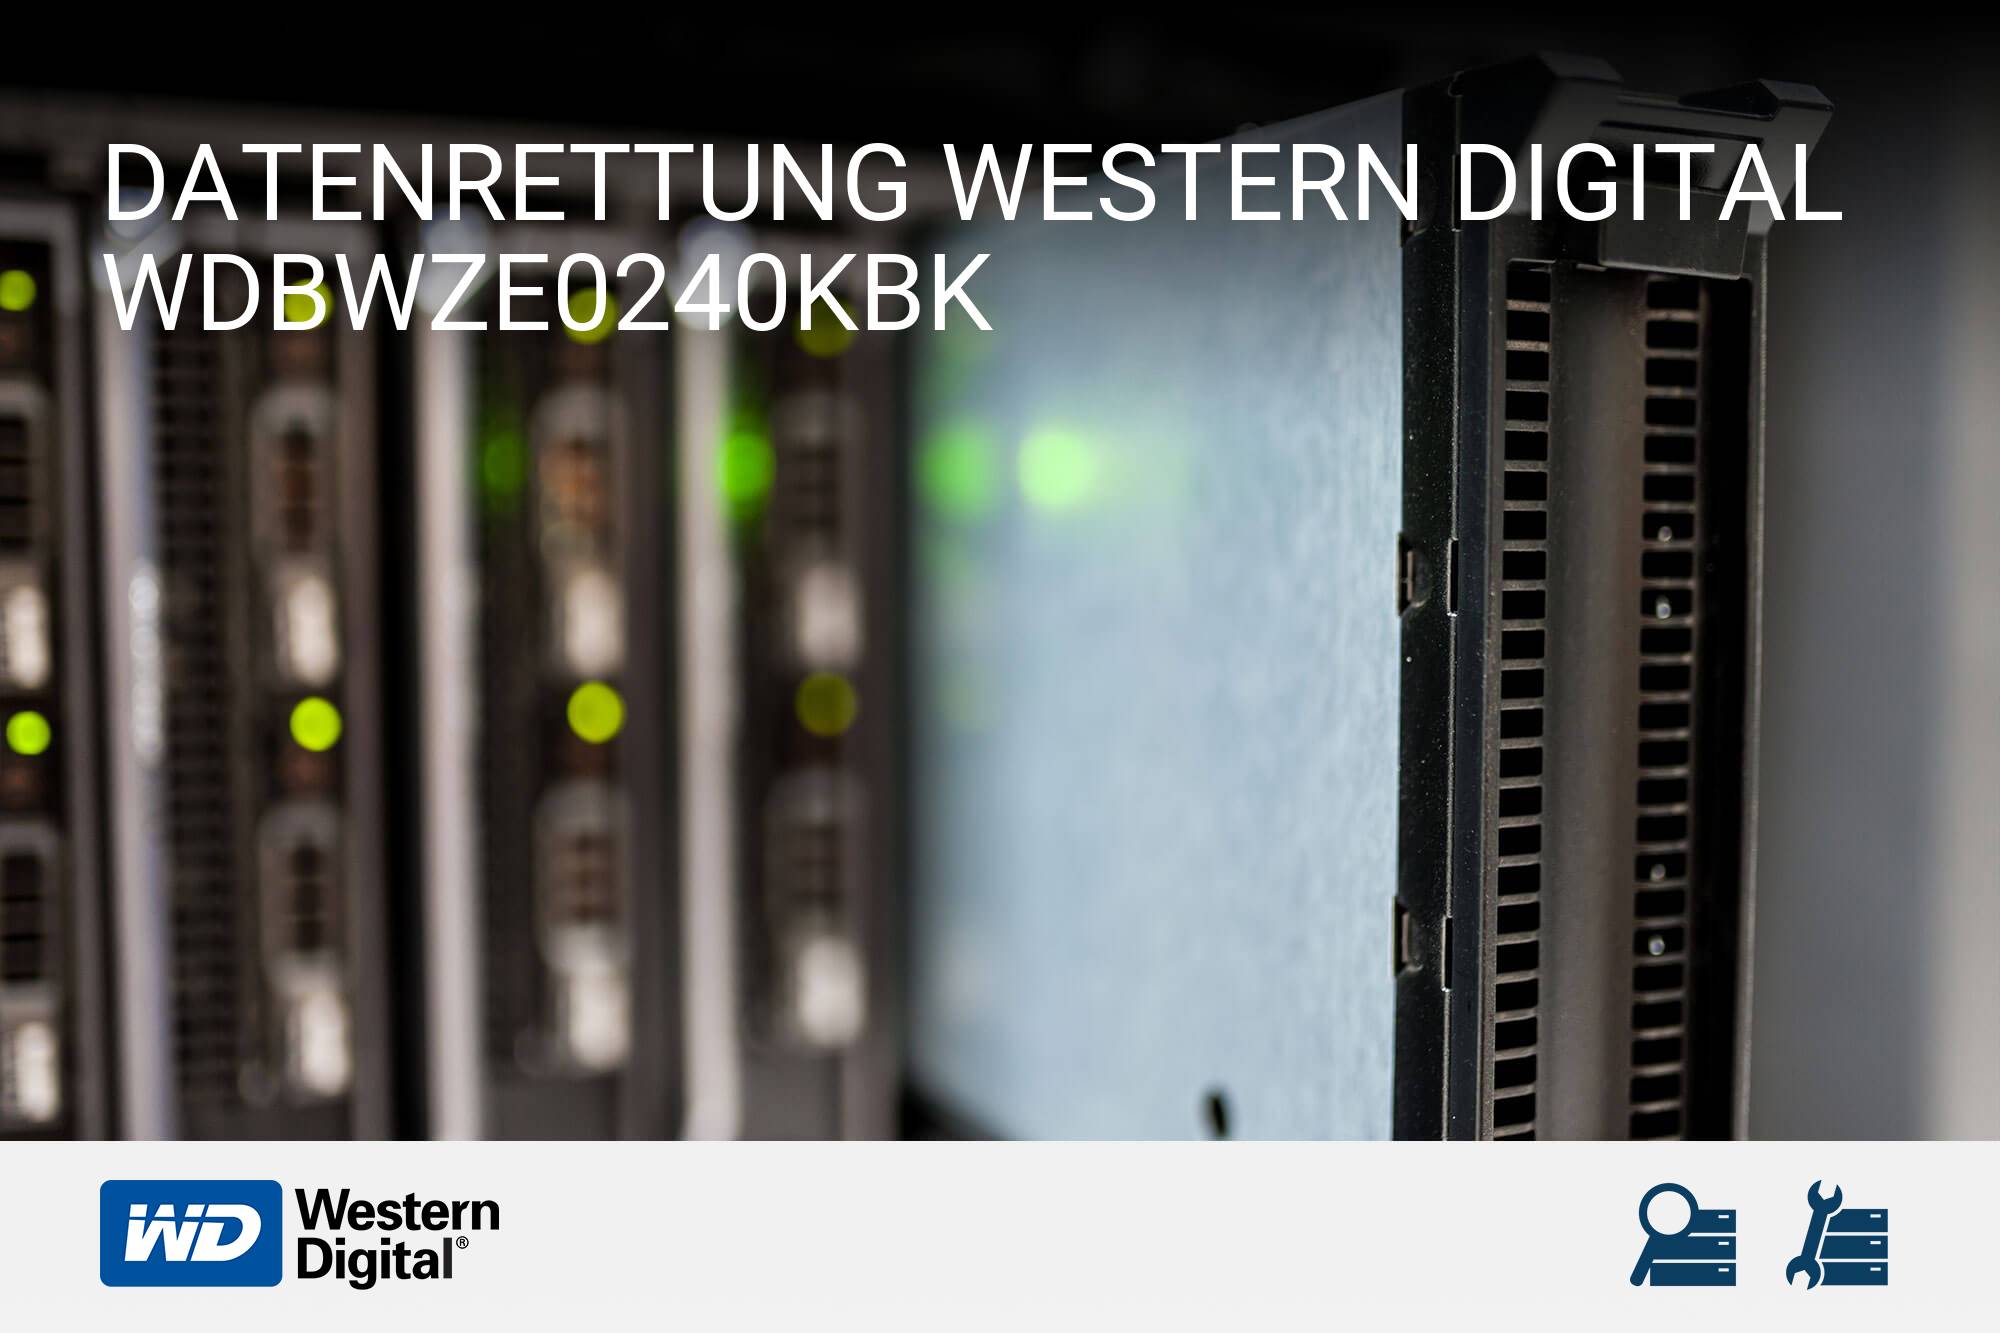 Western Digital WDBWZE0240KBK